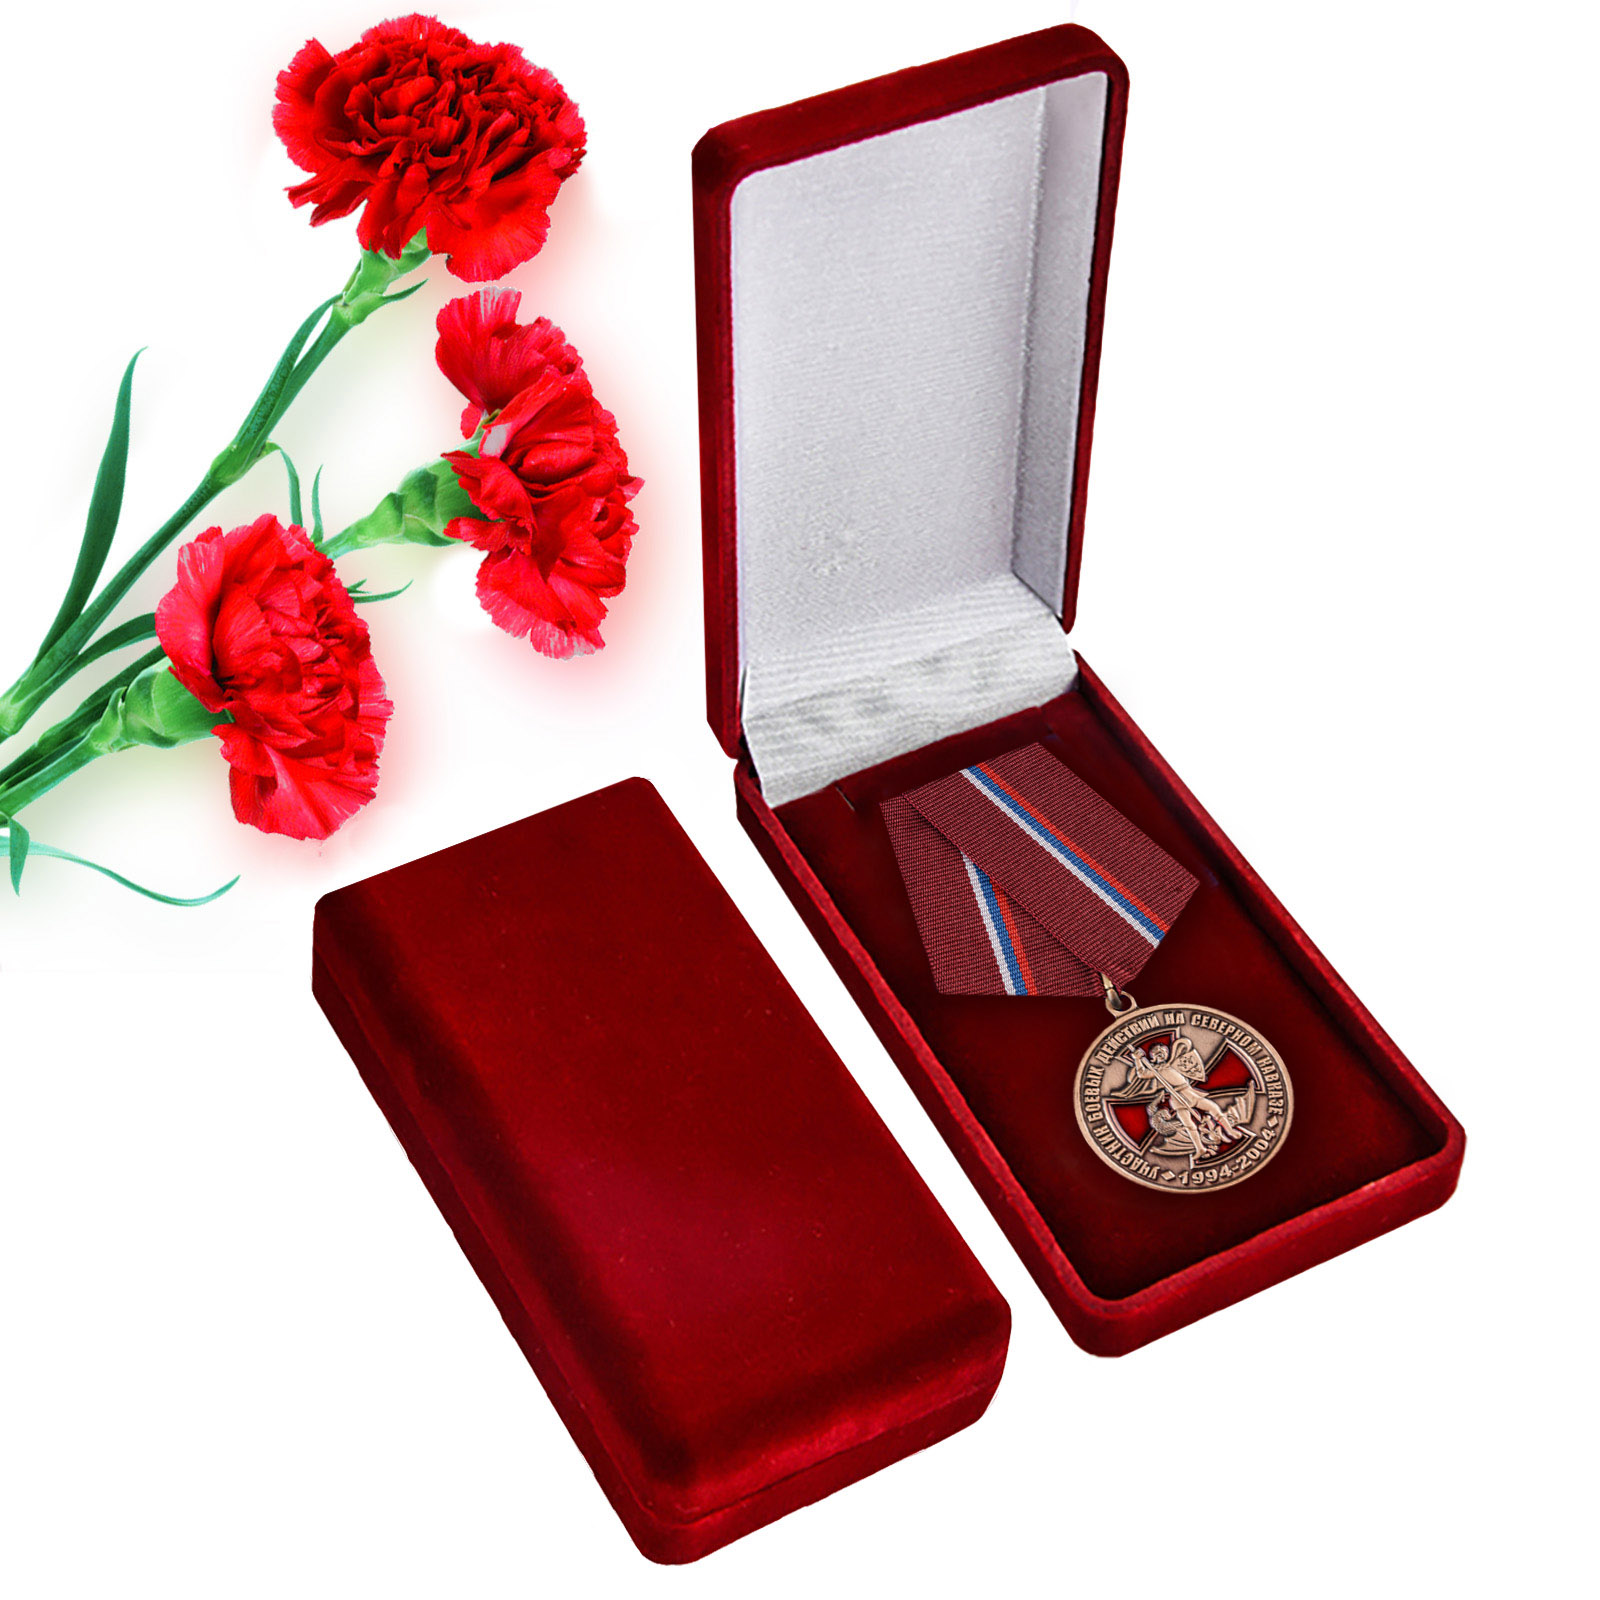 Купить памятную медаль Участник боевых действий на Северном Кавказе онлайн